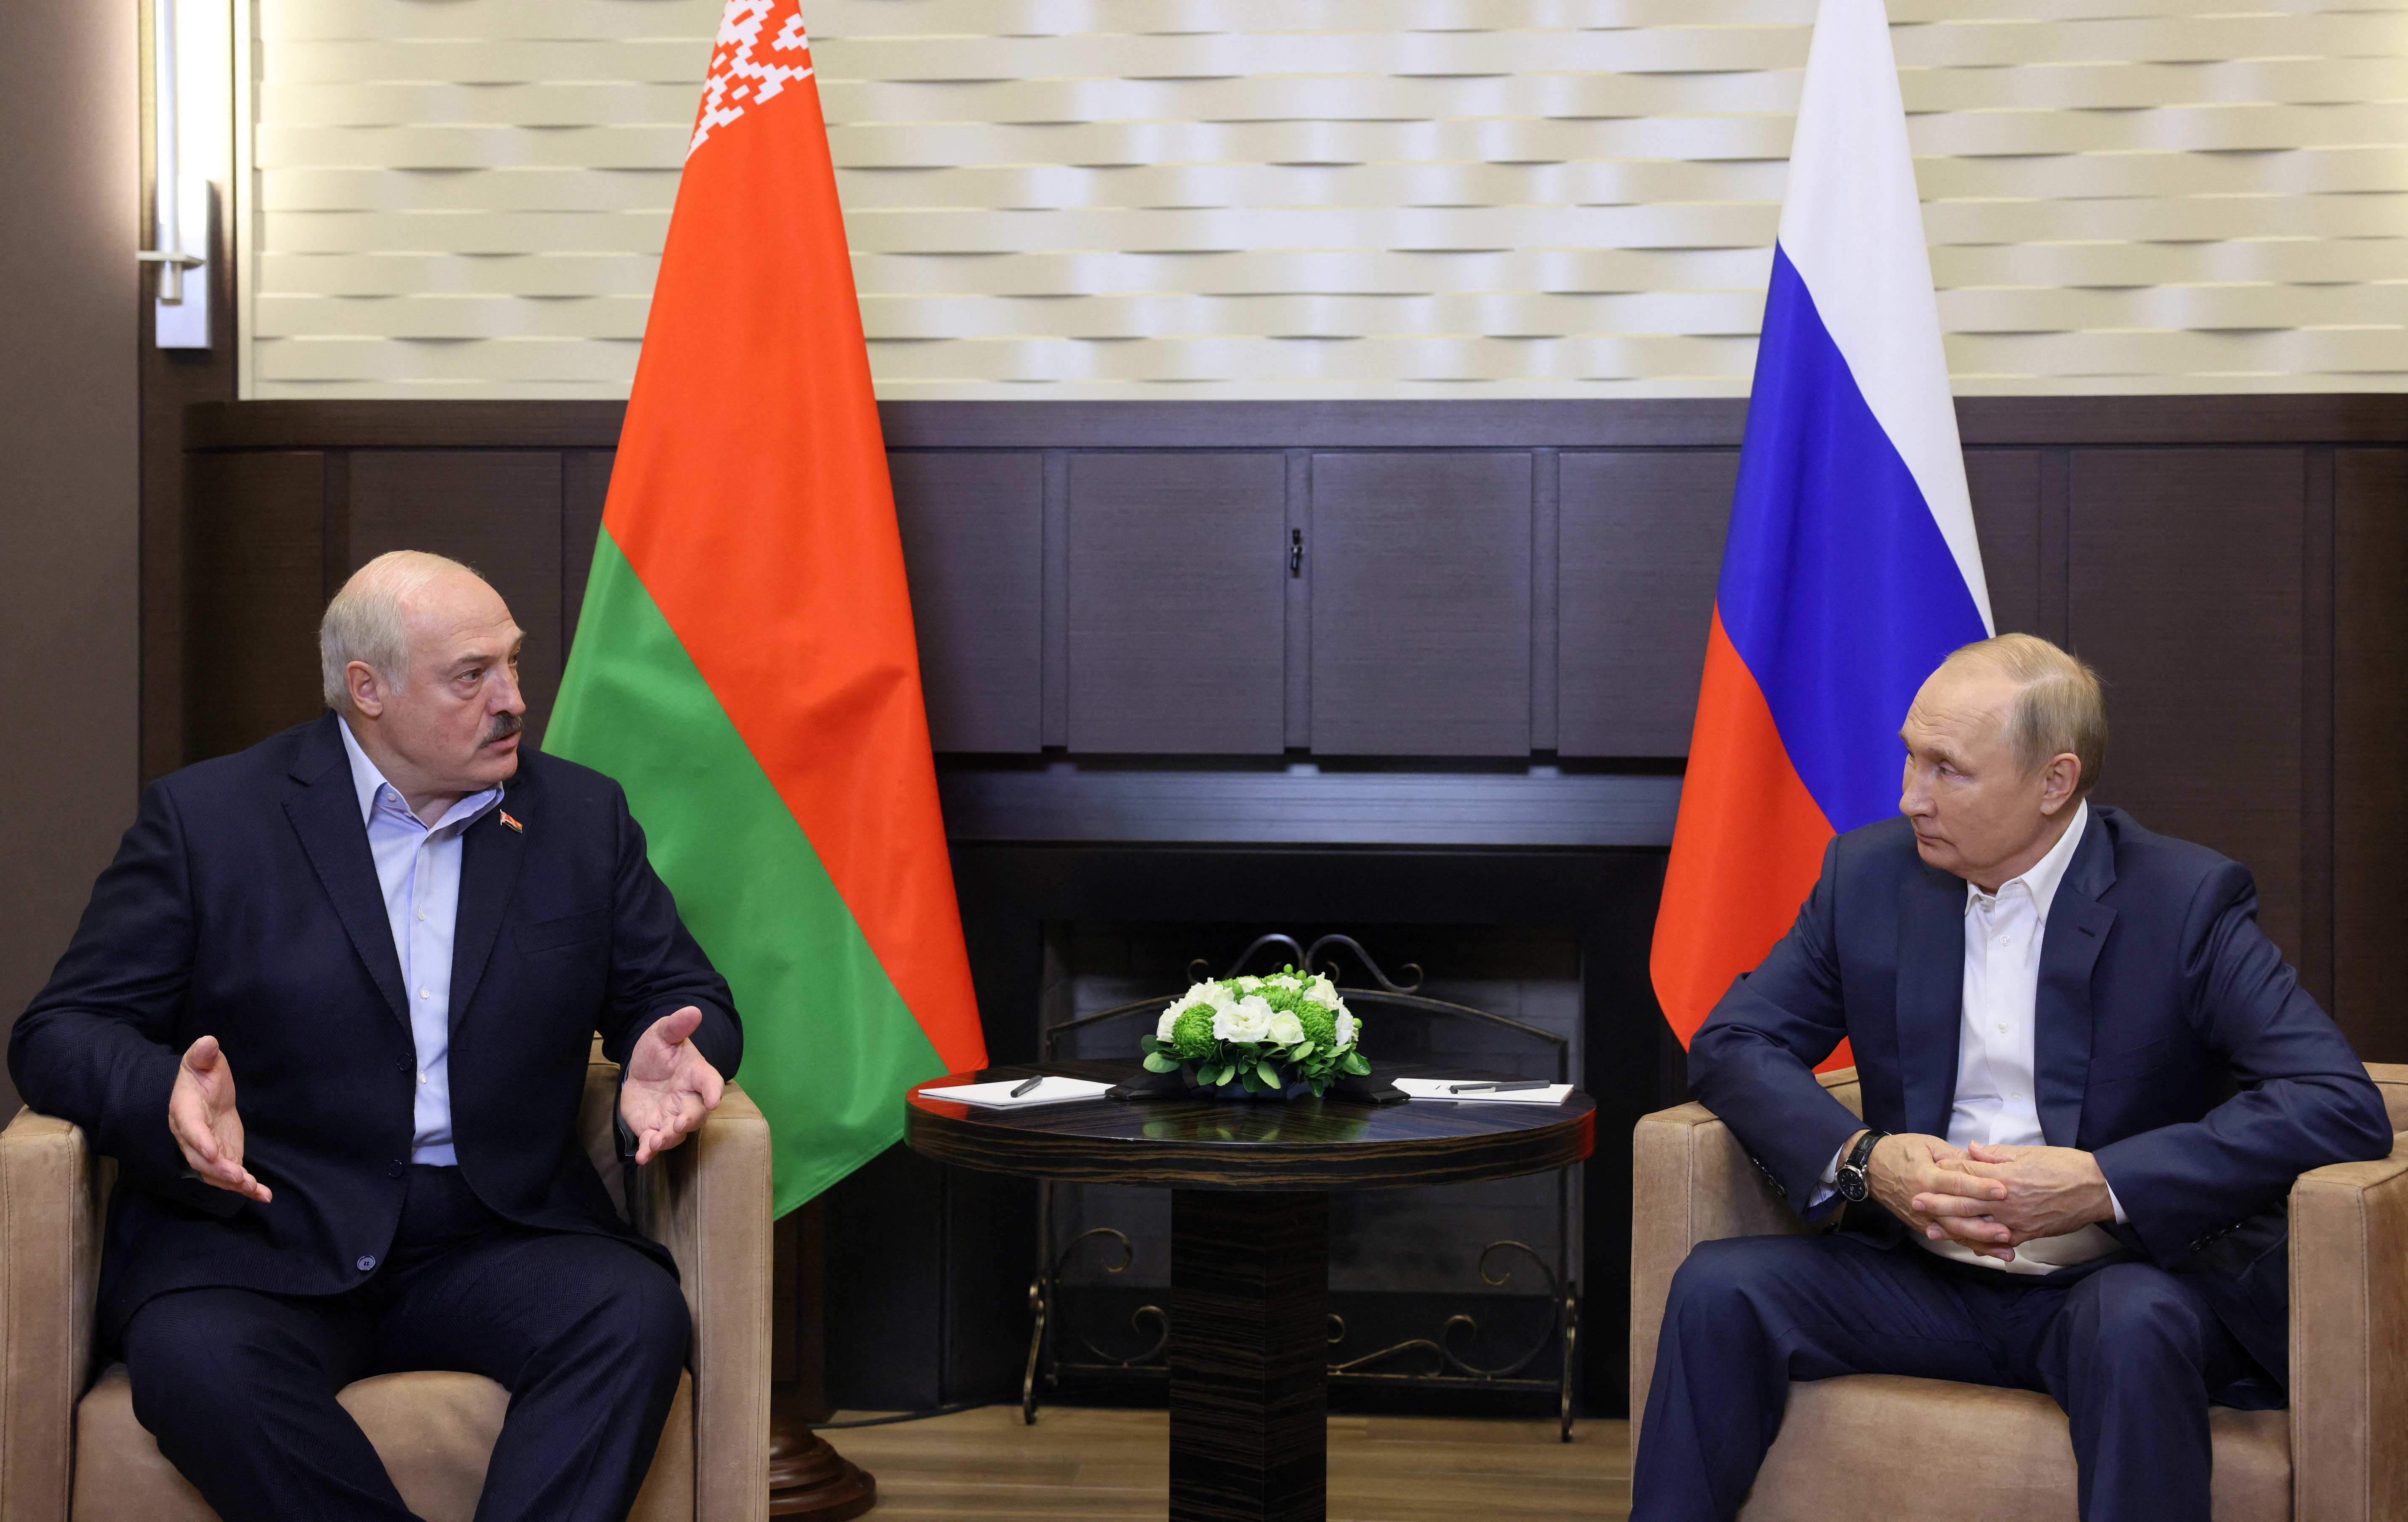 El presidente ruso, Vladimir Putin, asiste a una reunión con su homólogo bielorruso Alexander Lukashenko en Sochi, Rusia 26 de septiembre de 2022. Sputnik/Gavriil Grigorov/Pool vía REUTERS